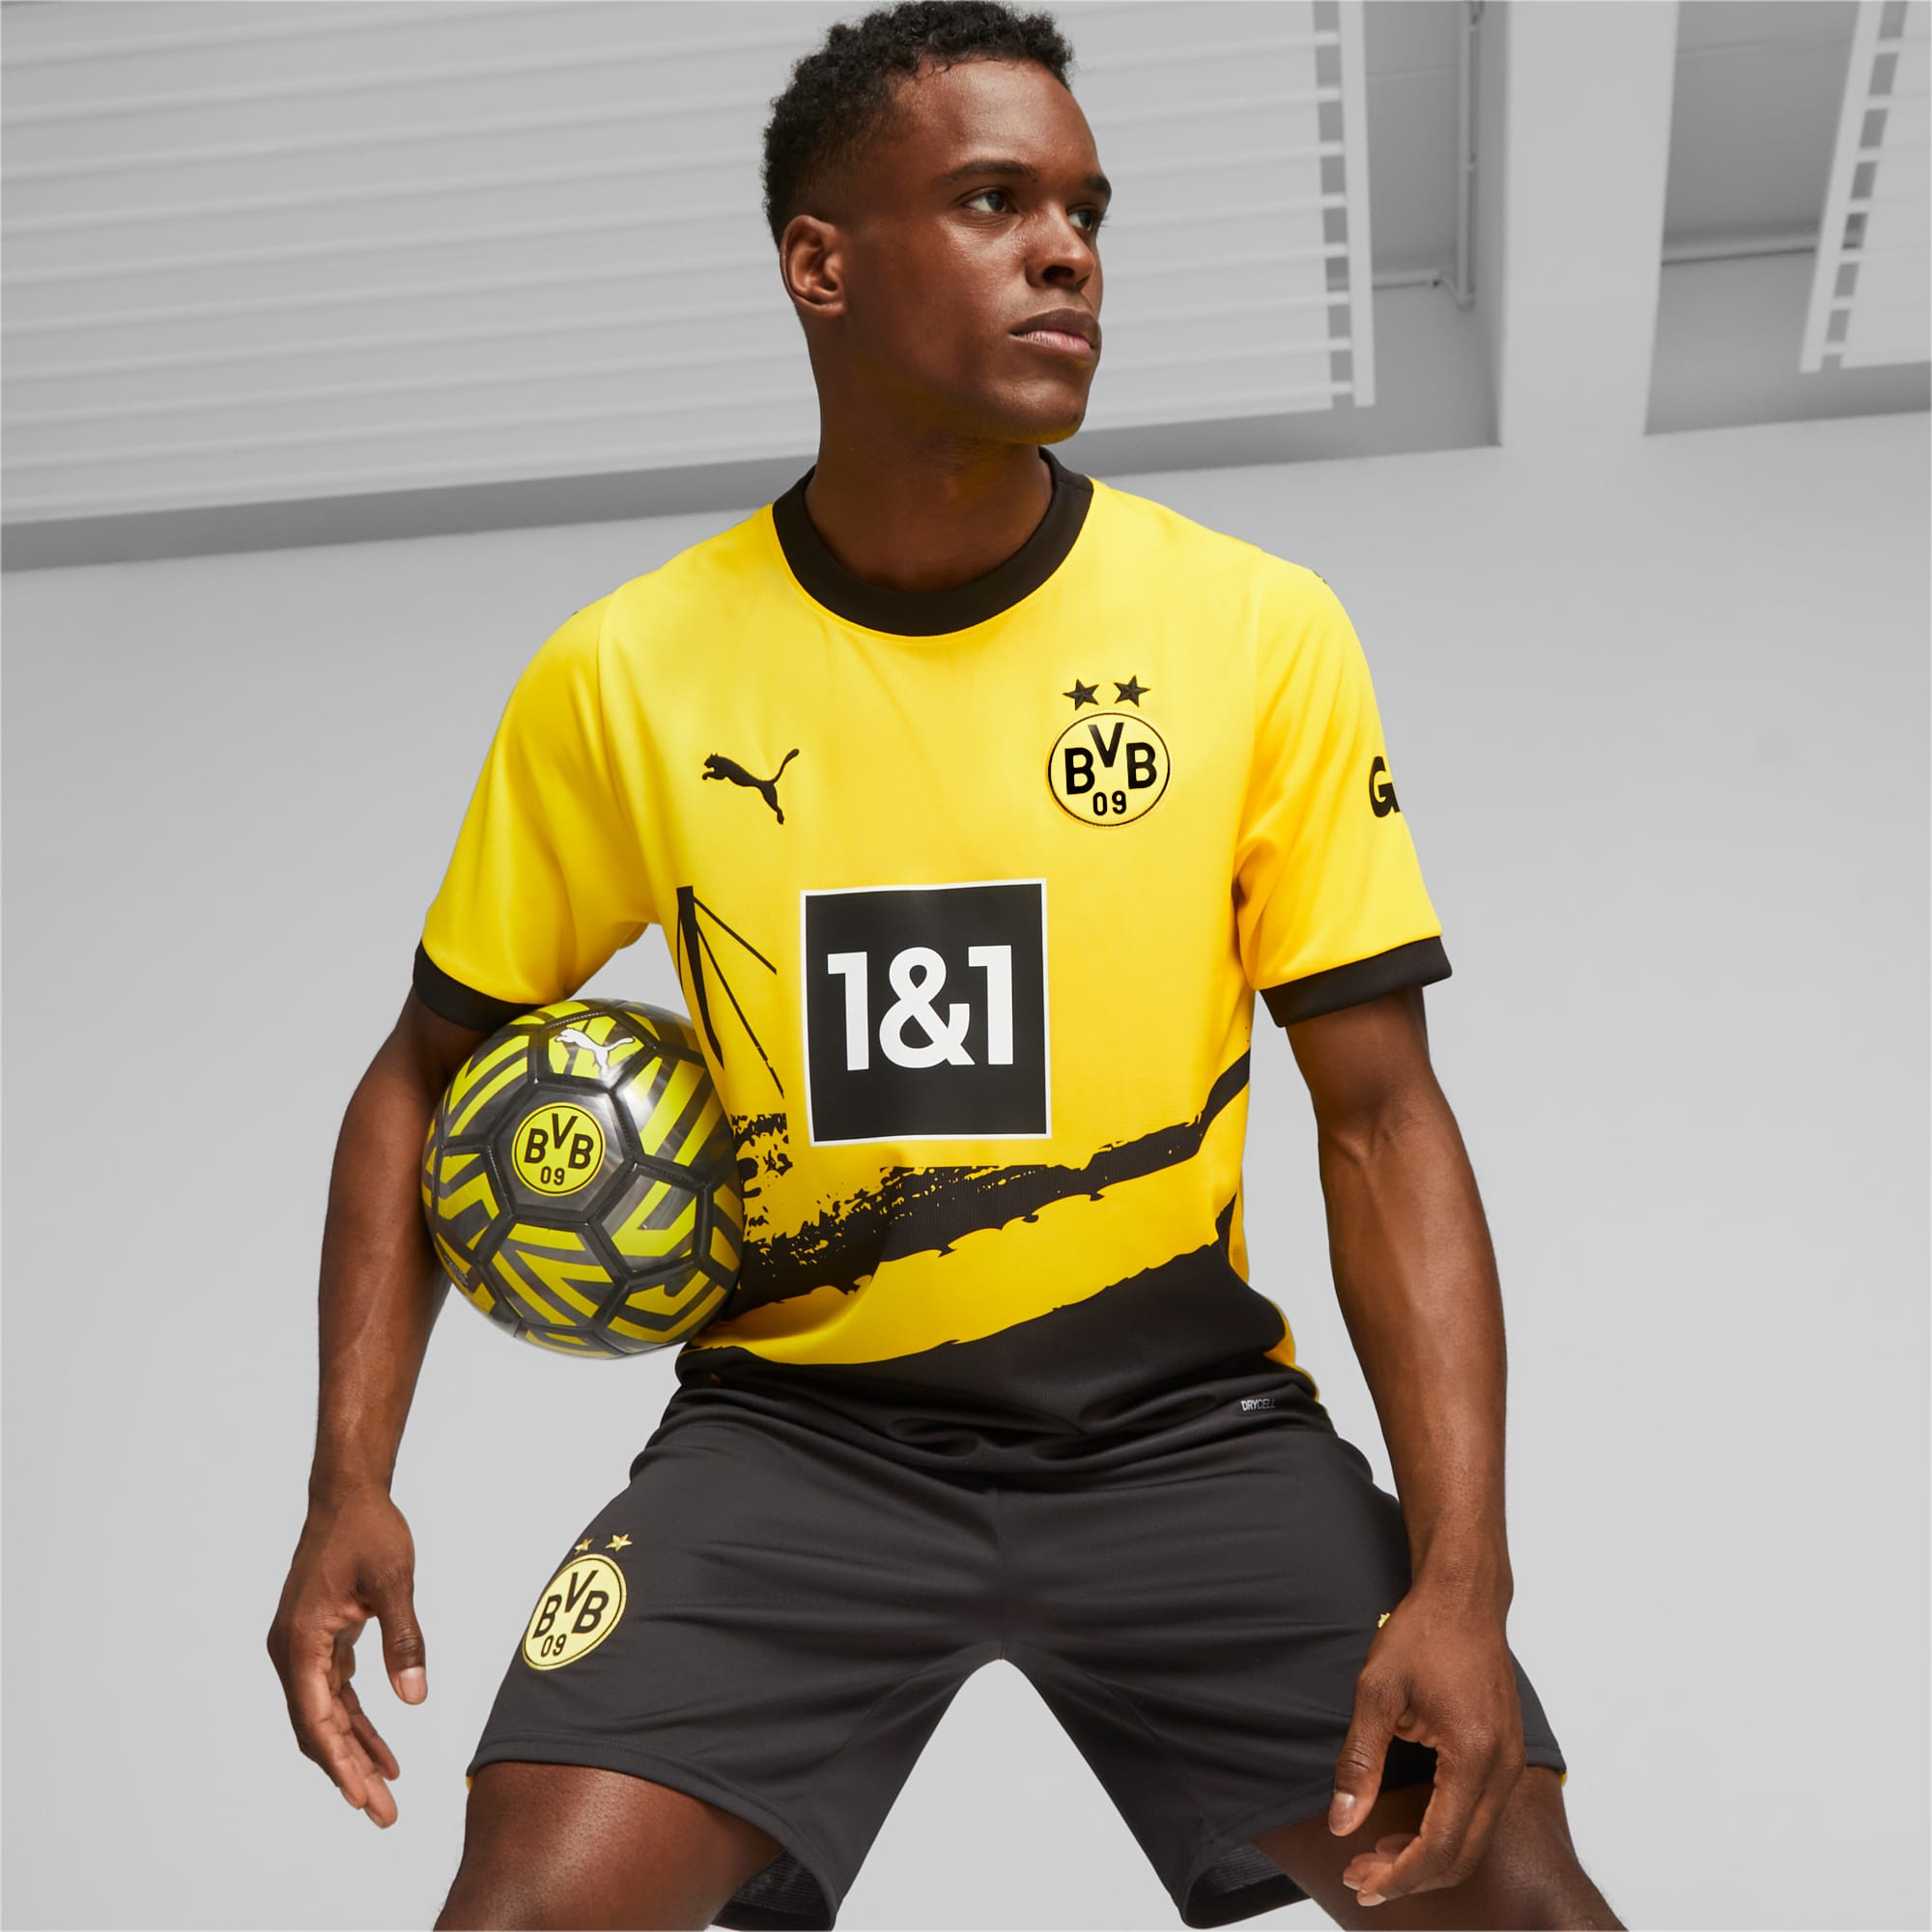 𝗖𝗔𝗠𝗜𝗦𝗘𝗧𝗔 𝗖𝗥𝗘𝗔𝗗𝗔 𝗣𝗢𝗥 𝗙𝗔𝗡𝗦! 👕💛 Borussia Dortmund  recibió más de 15.000 diseños como propuestas para la camiseta de la  próxima temporada…